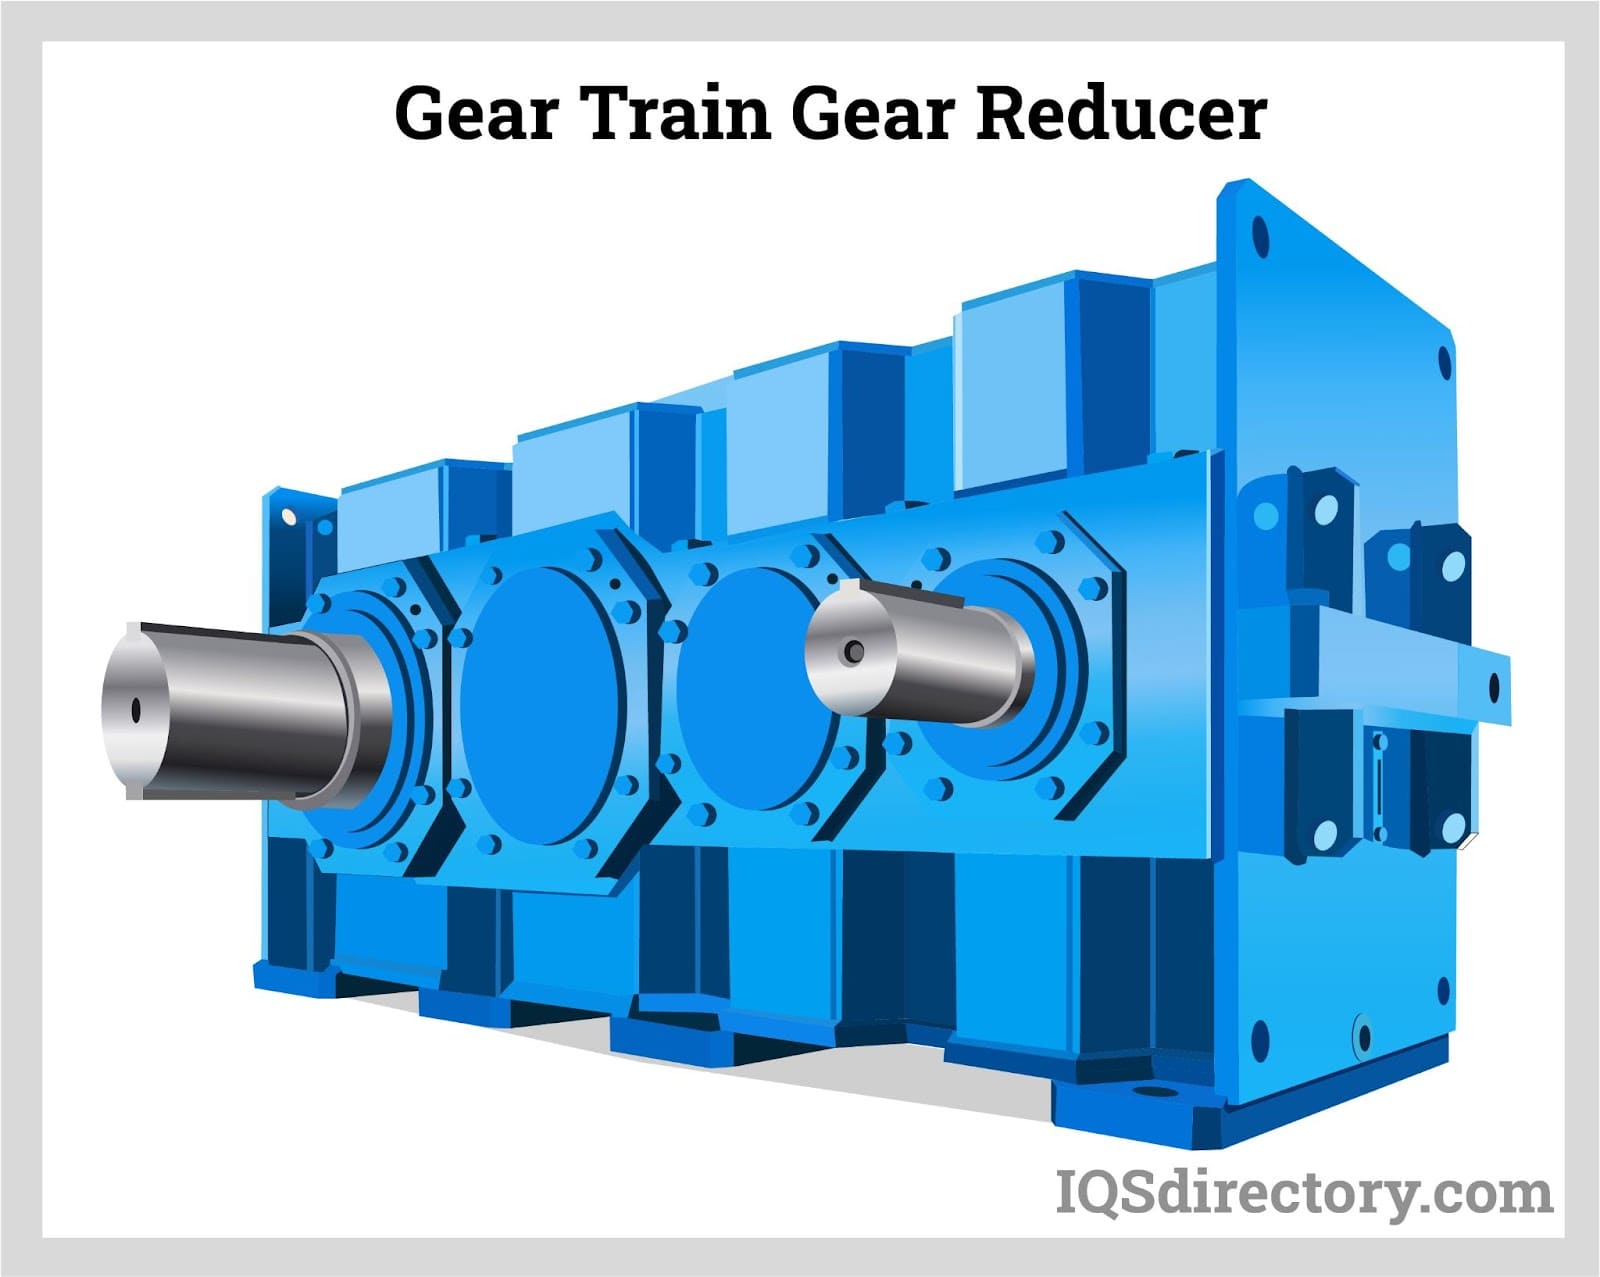 Gear Train Gear Reducer